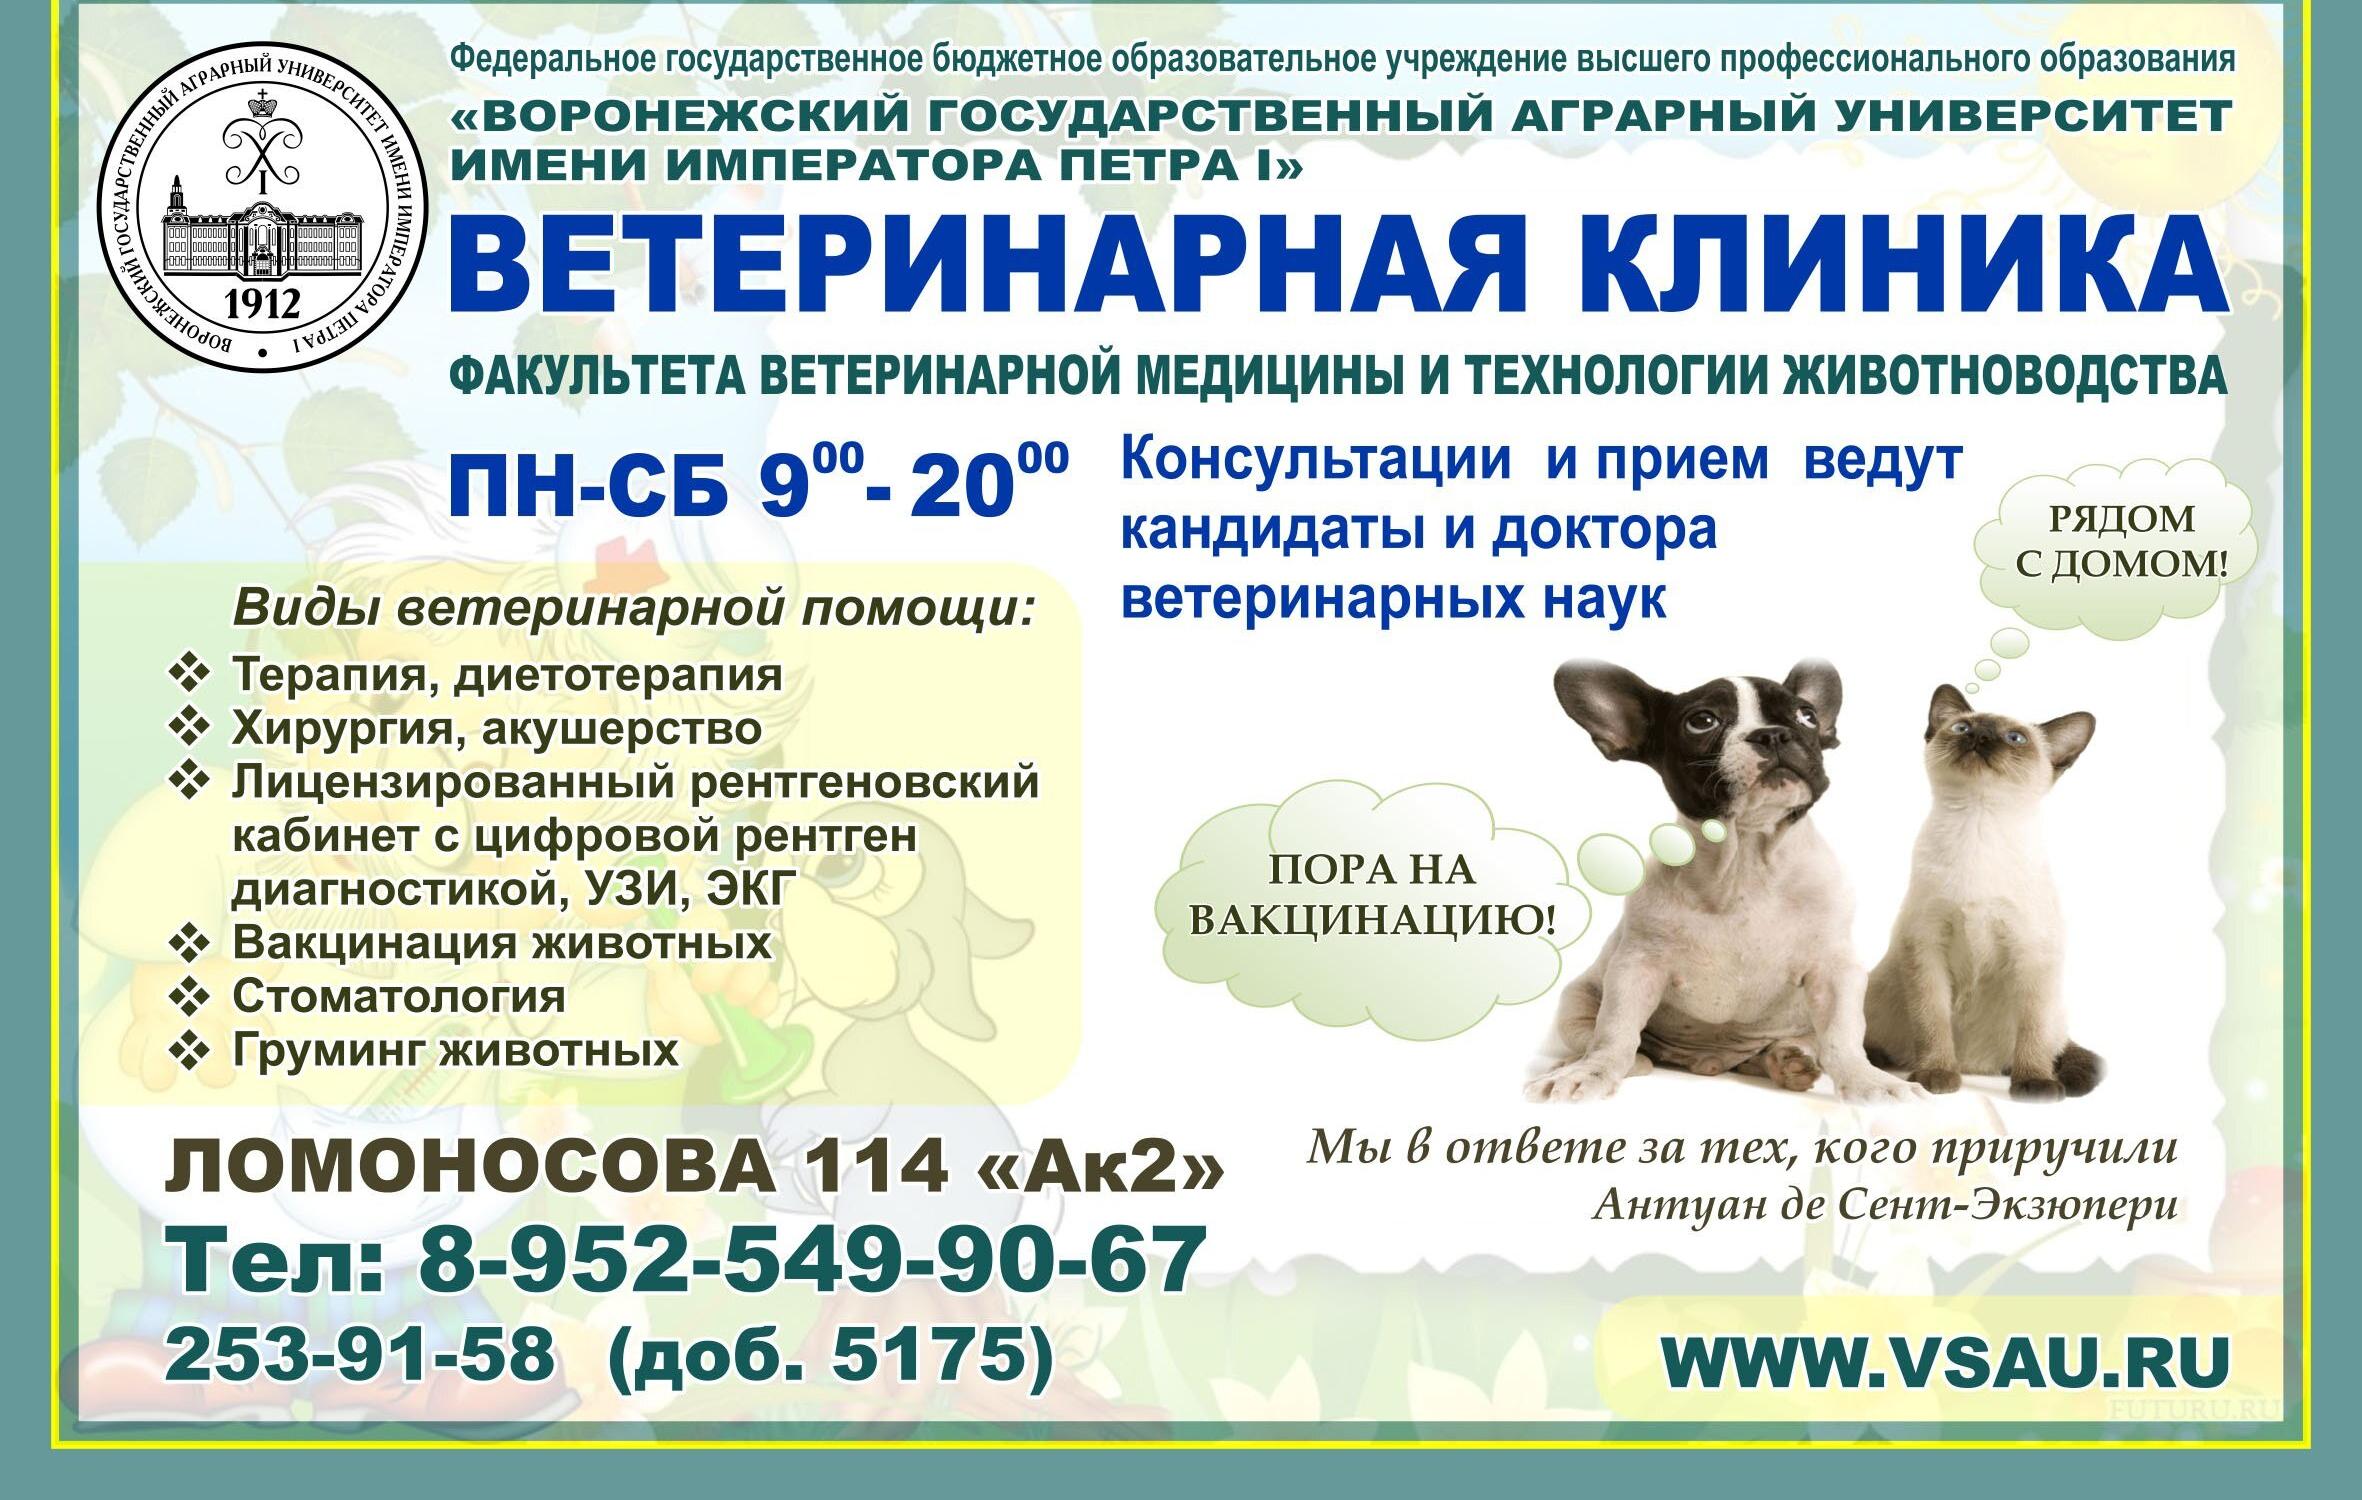 Государственная ветеринарная клиника телефон и адрес